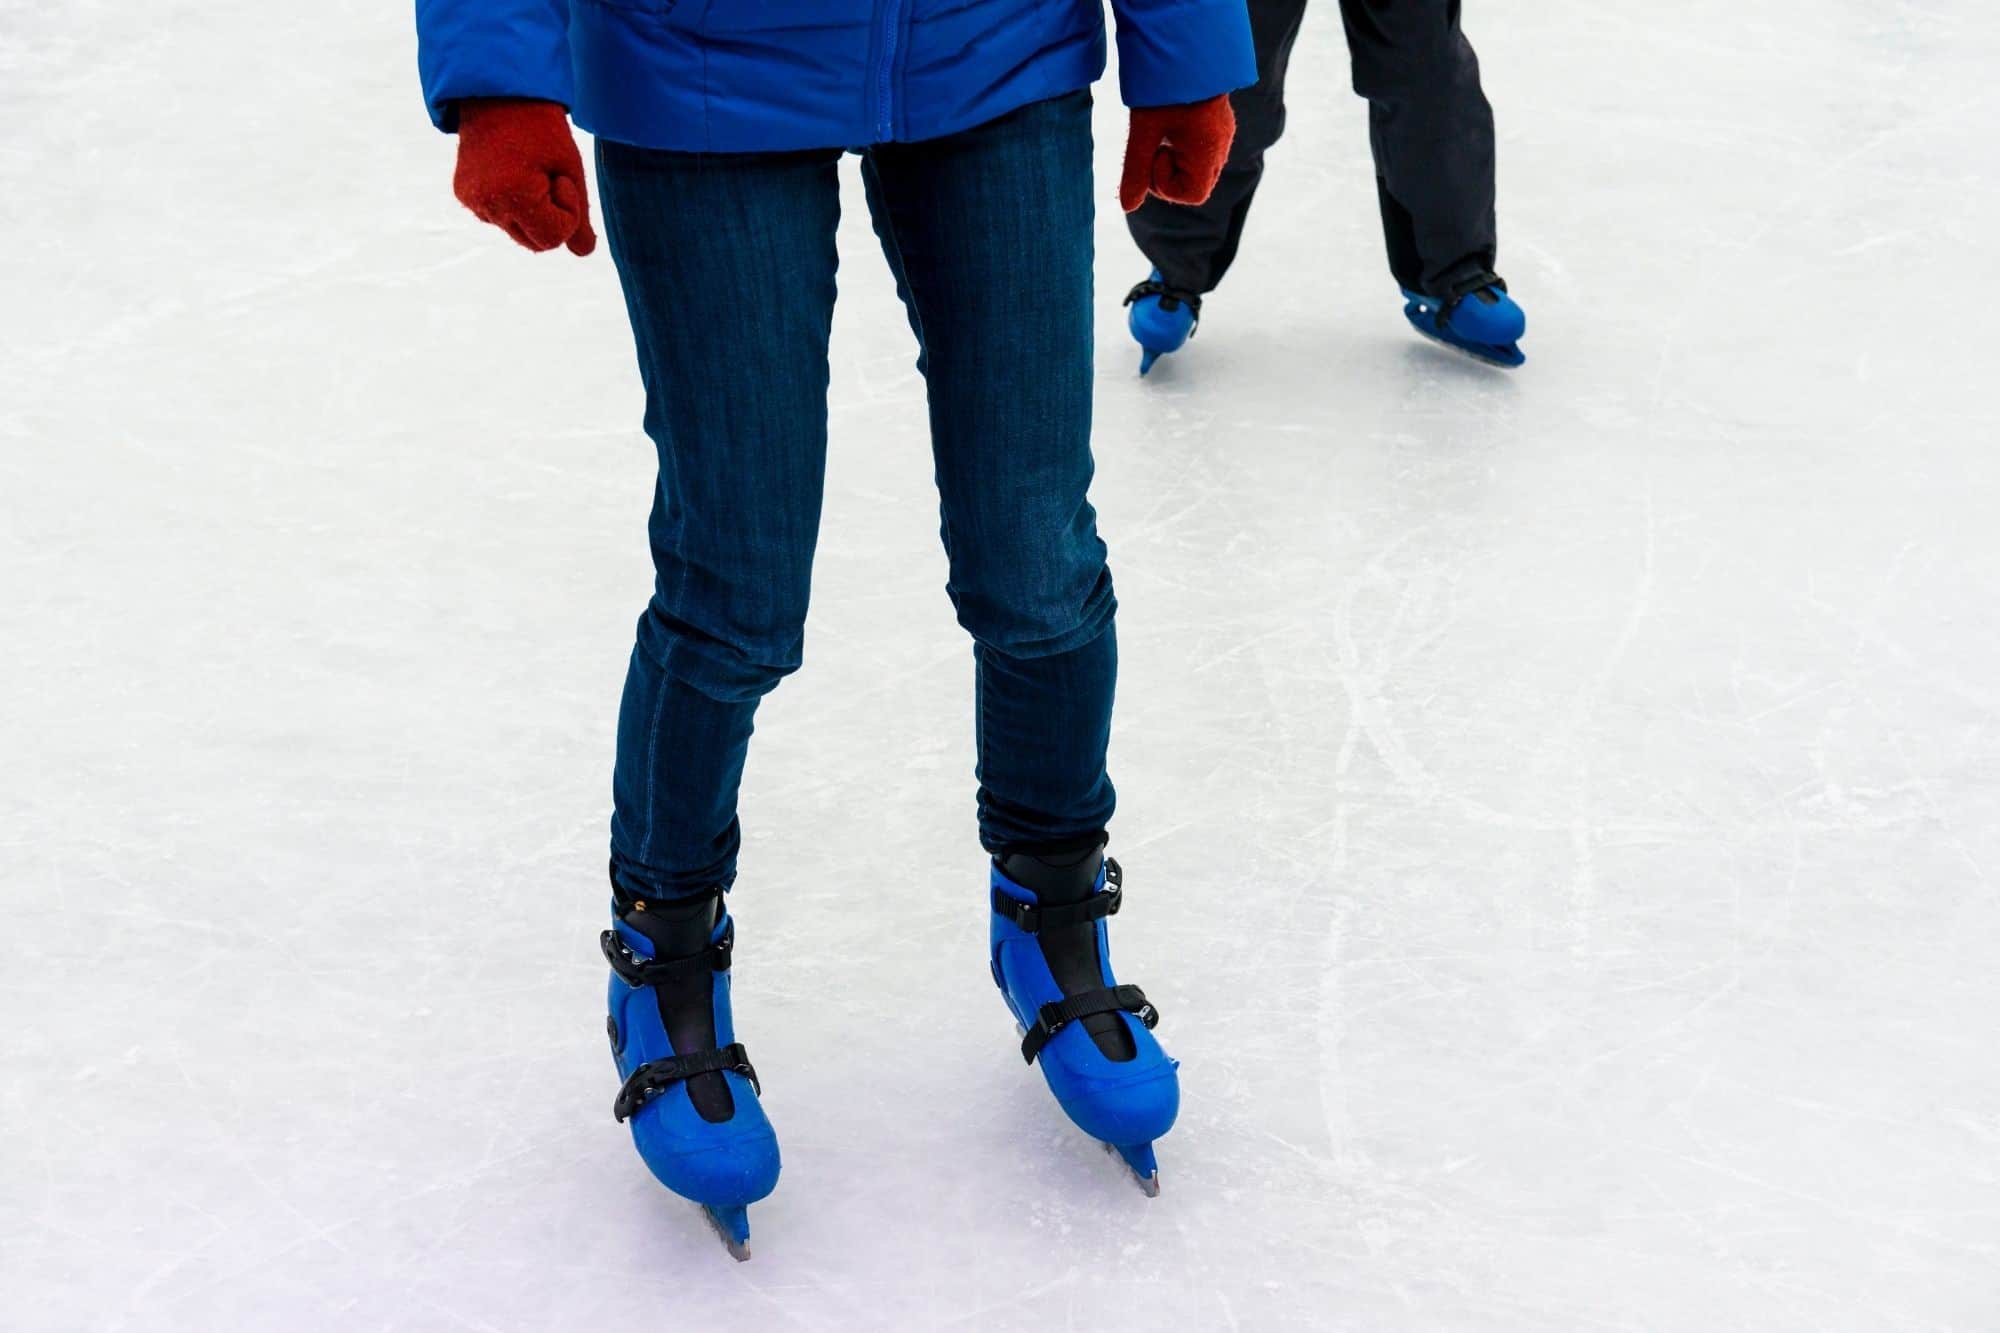 Learning skates on ice